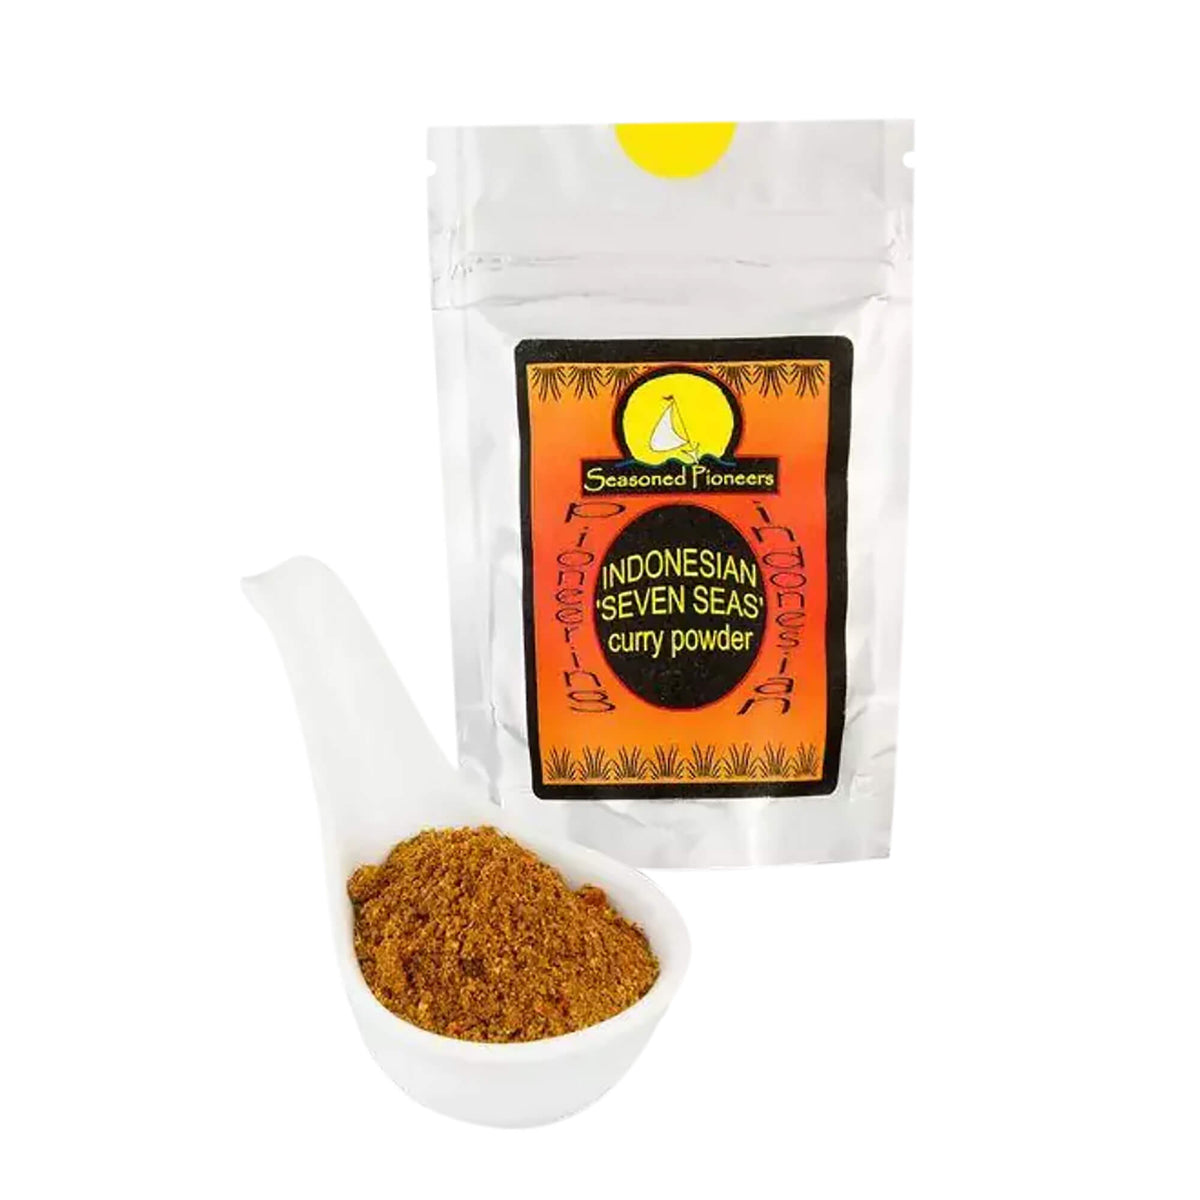 Seasoned Pioneers - Indonesian Seven Seas Curry Powder (31g)